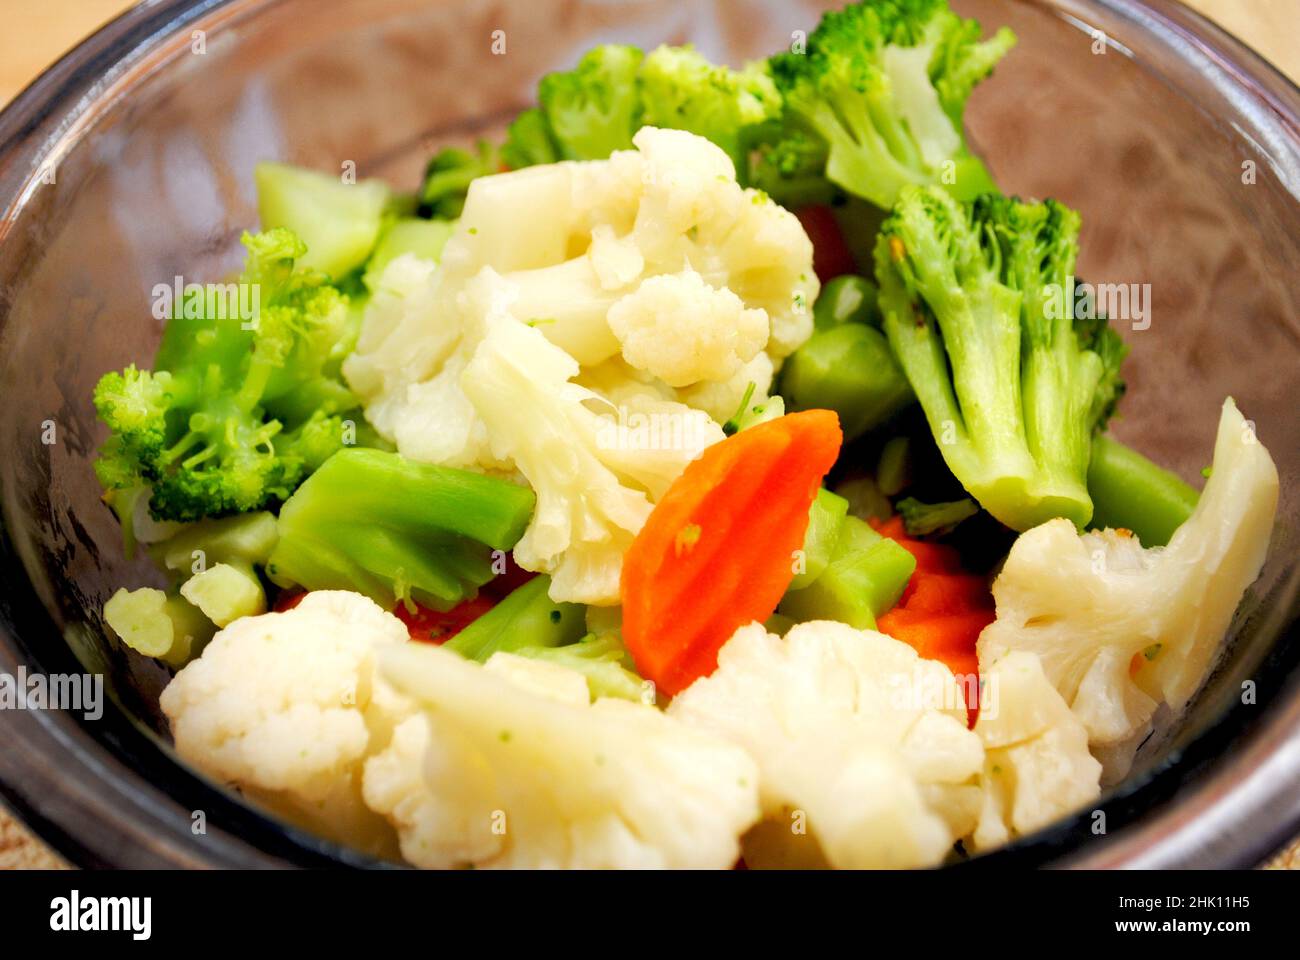 Un bol de brocoli, chou-fleur et carottes Banque D'Images